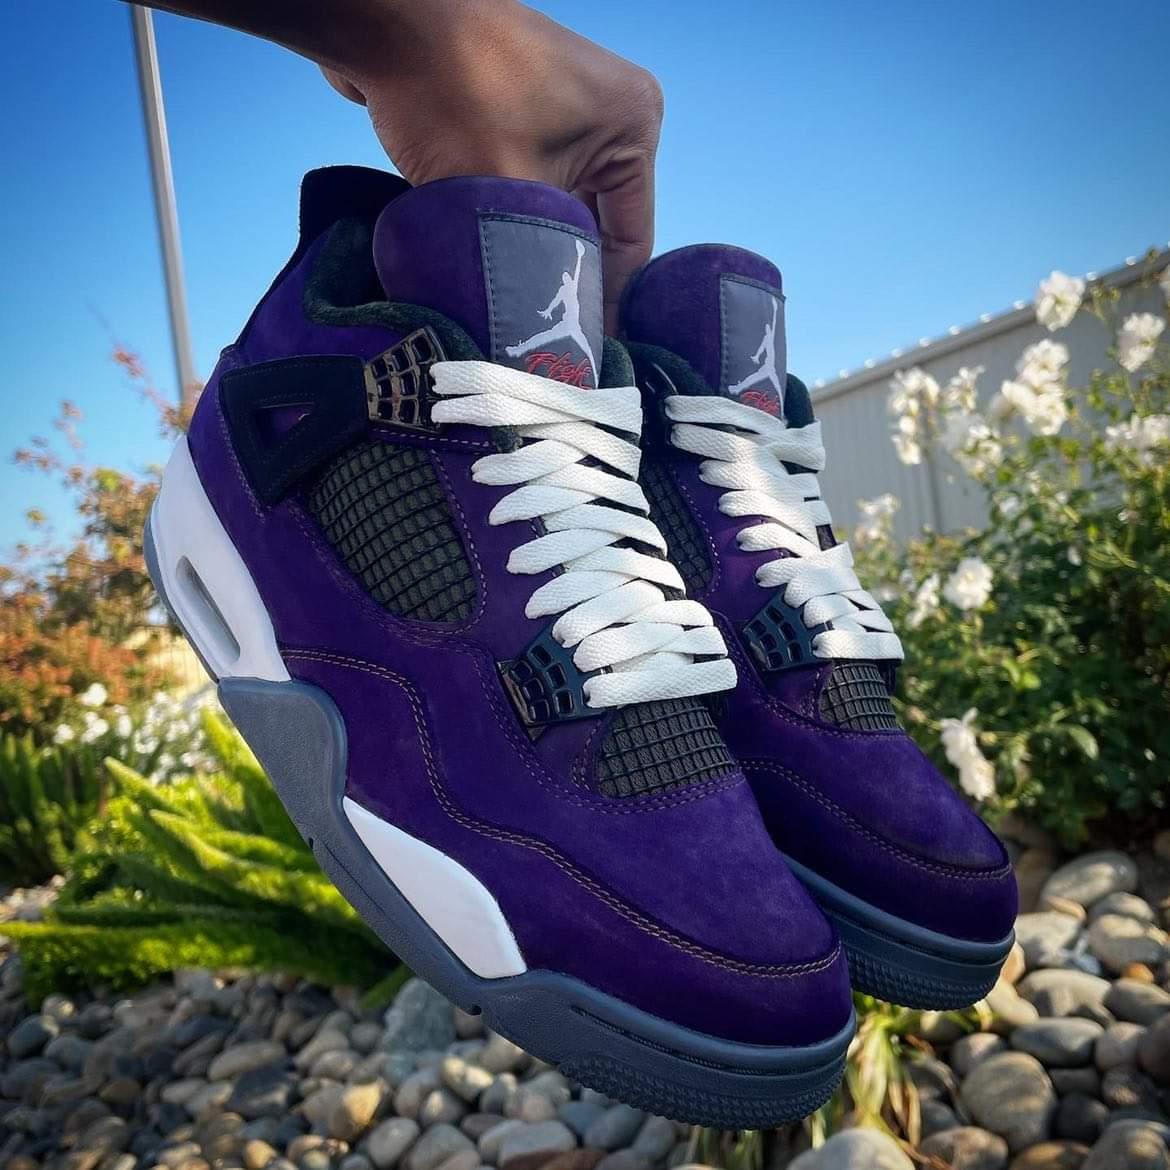 Jordan Customized purple Featured Sneakers - Sneaker US Sneaker Store & Streetwear in Hayward